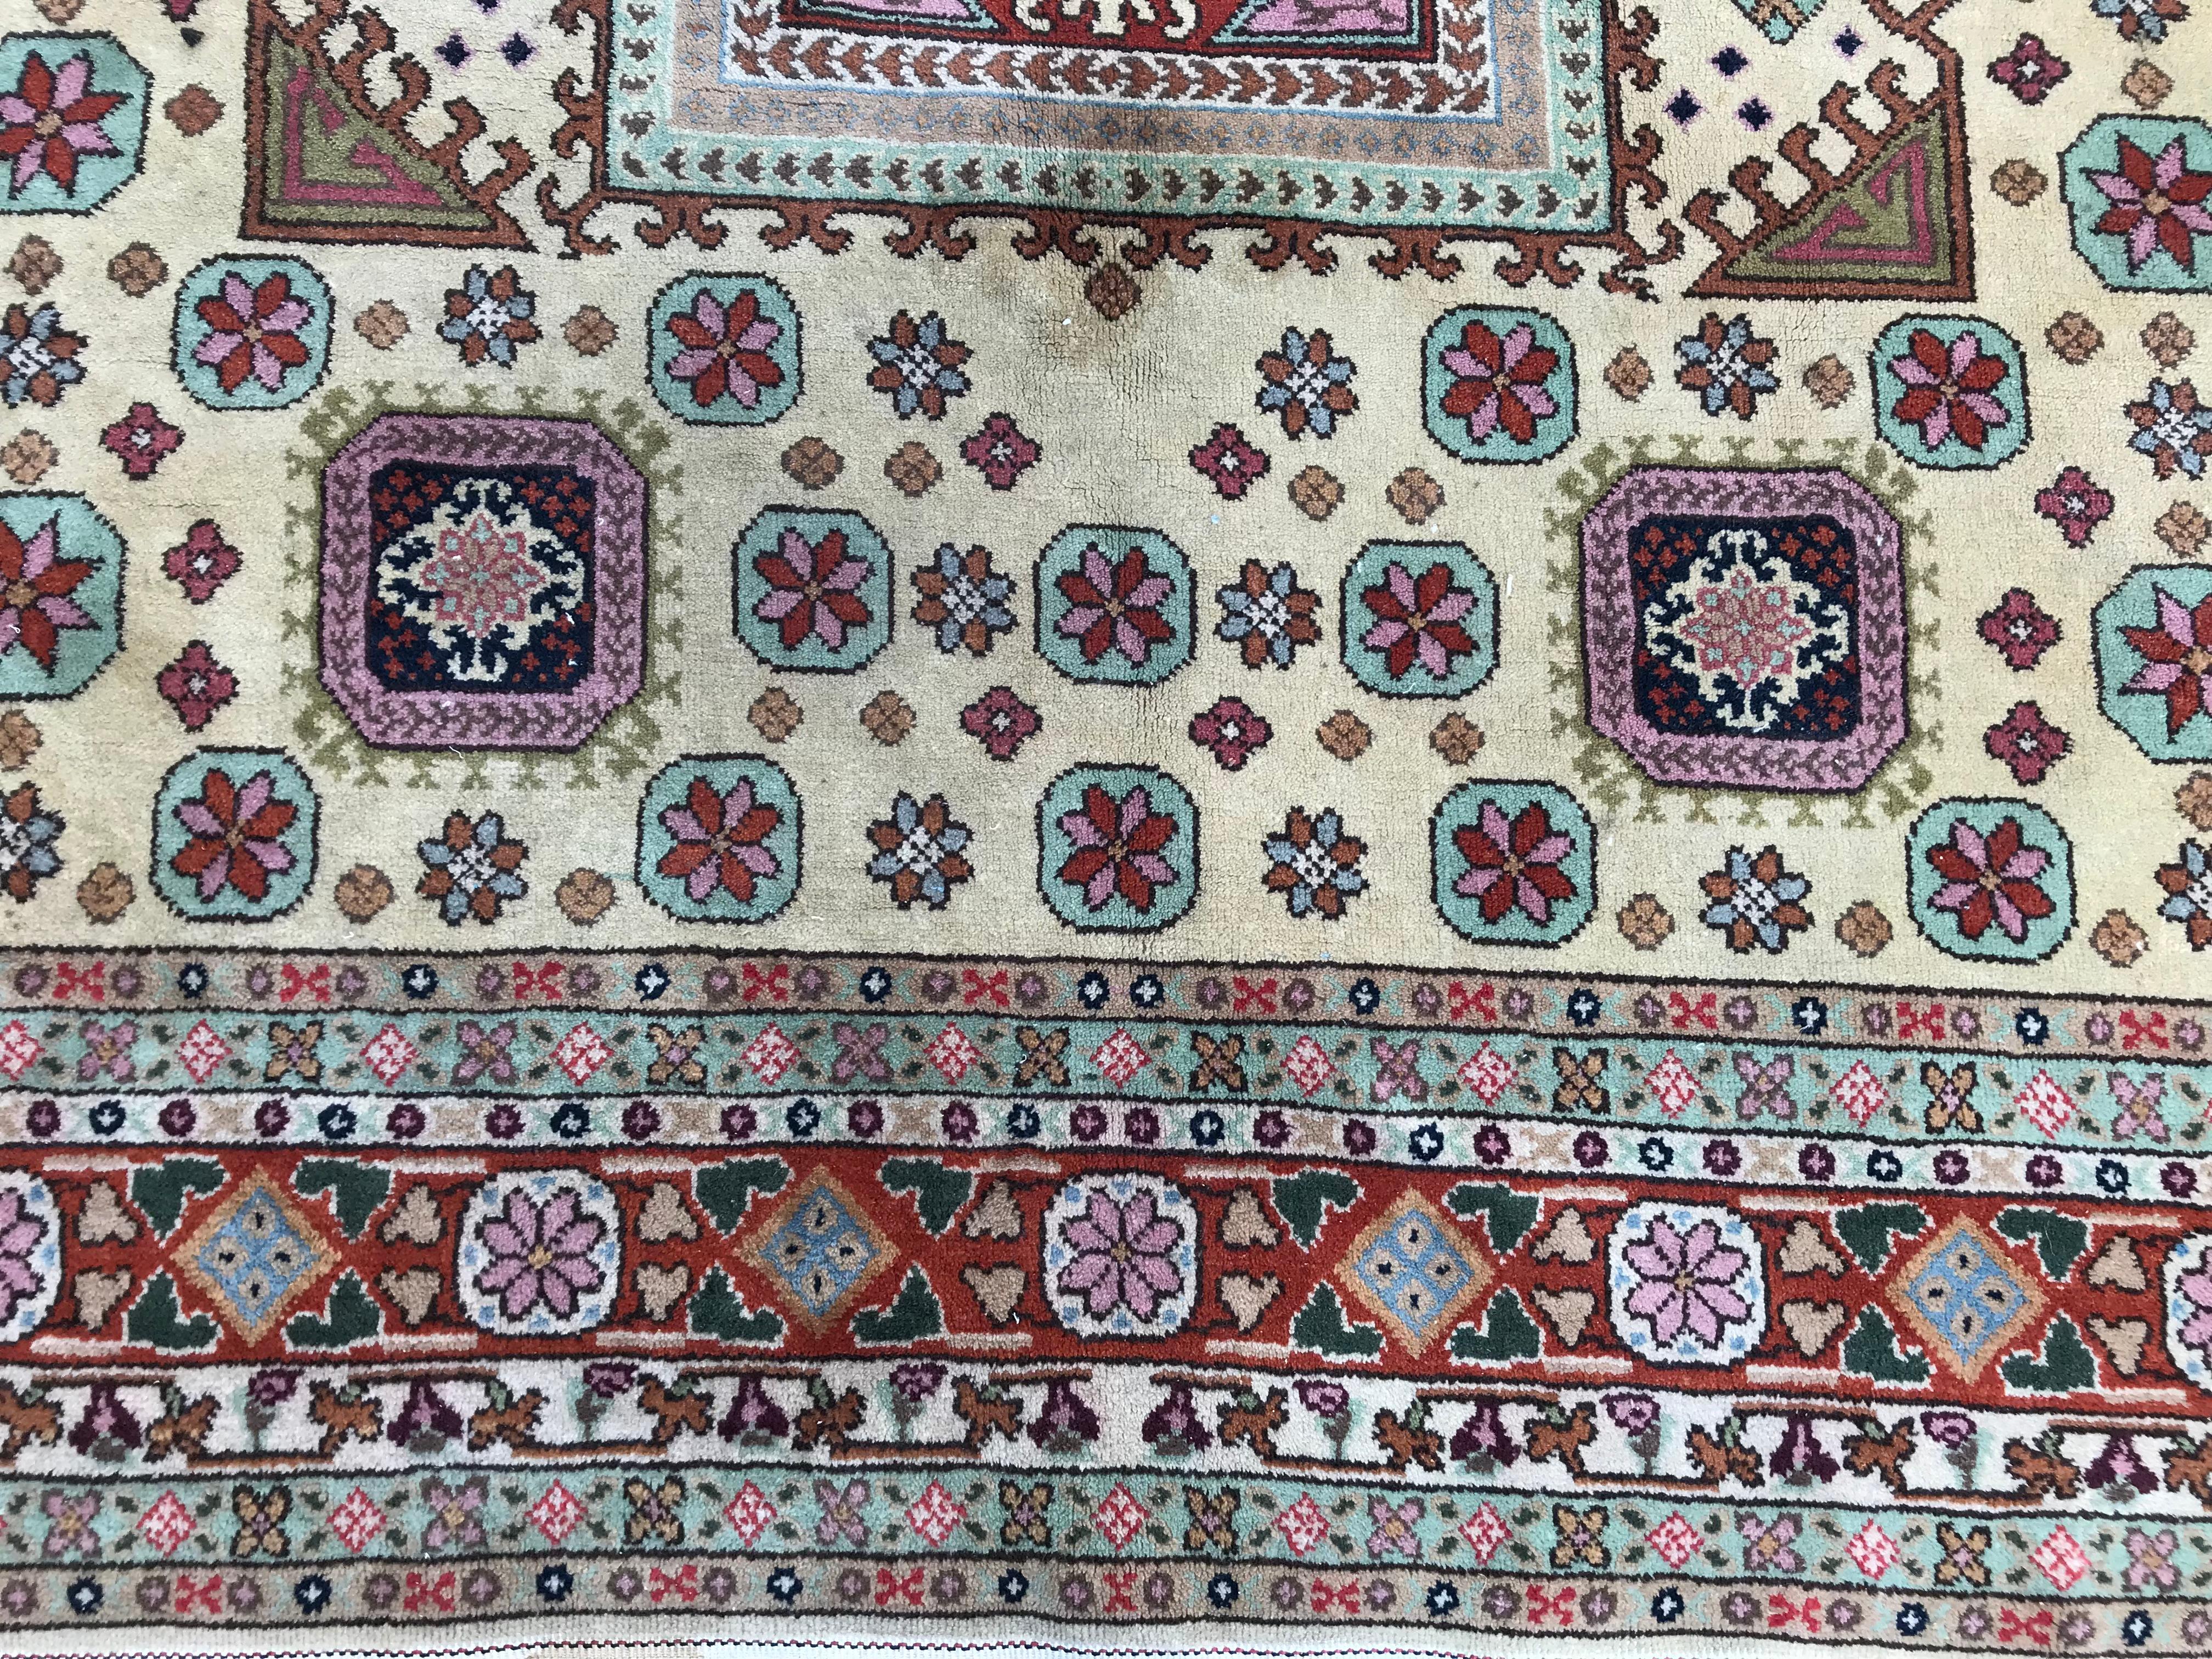 Ein sehr schöner siebenbürgischer Teppich, Mitte des 20. Jahrhunderts mit einem persischen Design und schönen Farben mit Rot, Rosa, Blau, Violett, Gelb und Grün, komplett handgeknüpft mit Wollsamt auf Baumwollbasis.

✨✨✨
